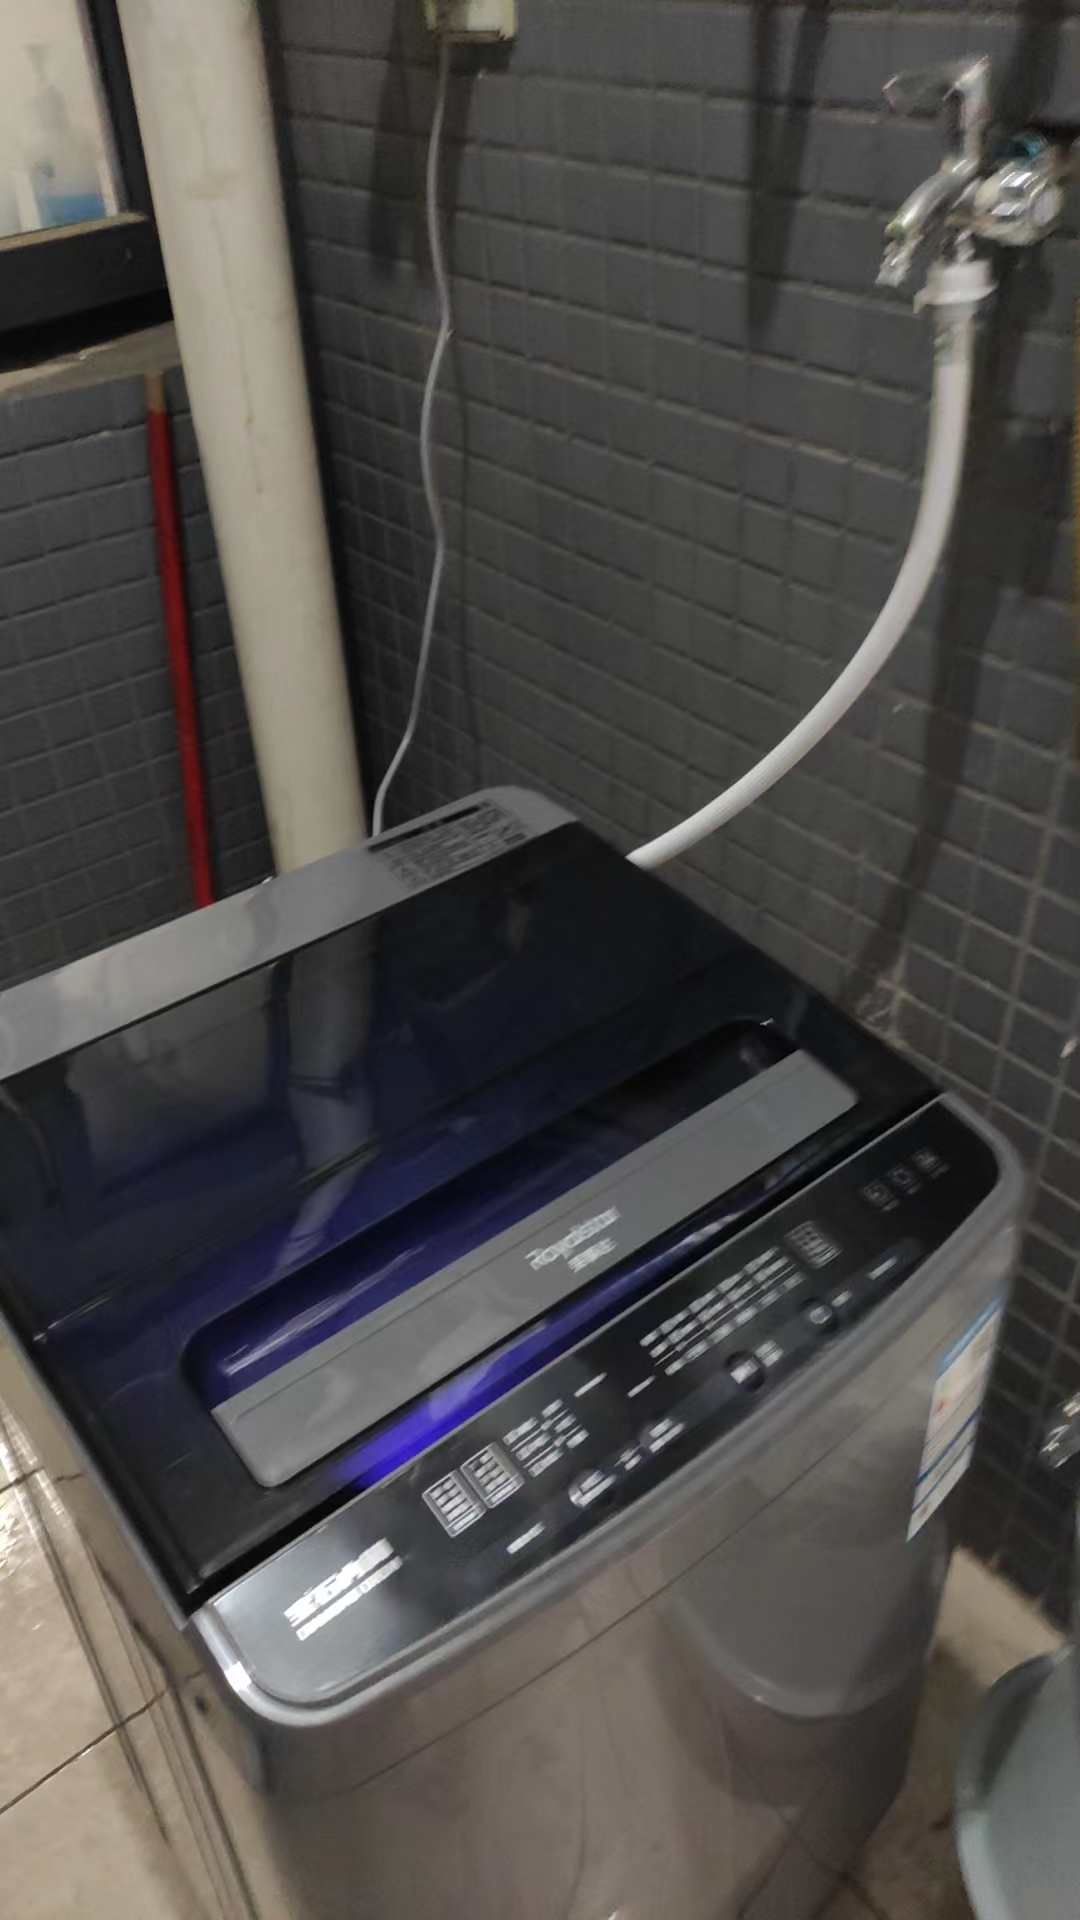 预售荣事达(Royalstar) 洗衣机6.5公斤全自动租房宿舍家用波轮小洗衣机 透明灰ERVP191013T升级除菌款晒单图